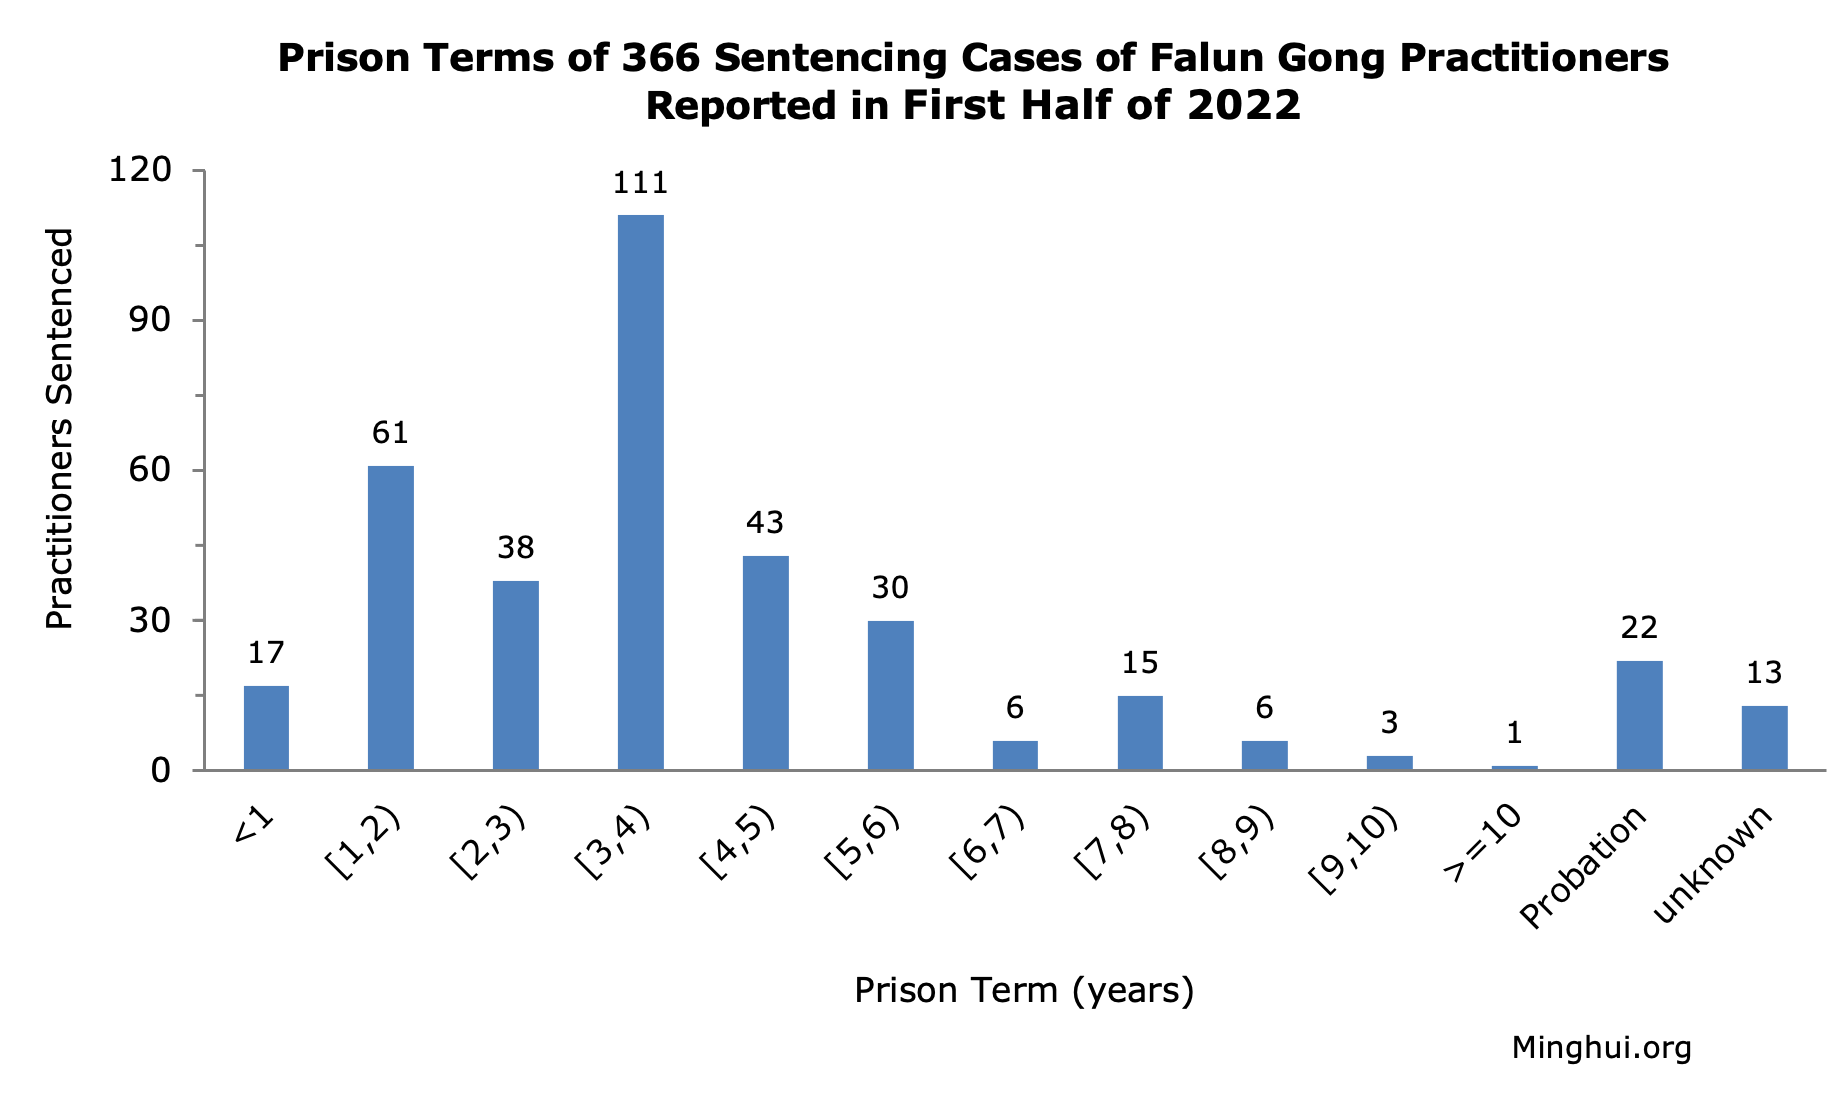 Image for article Primer semestre de 2022: Se informa la condena de 366 practicantes de Falun Gong por su fe